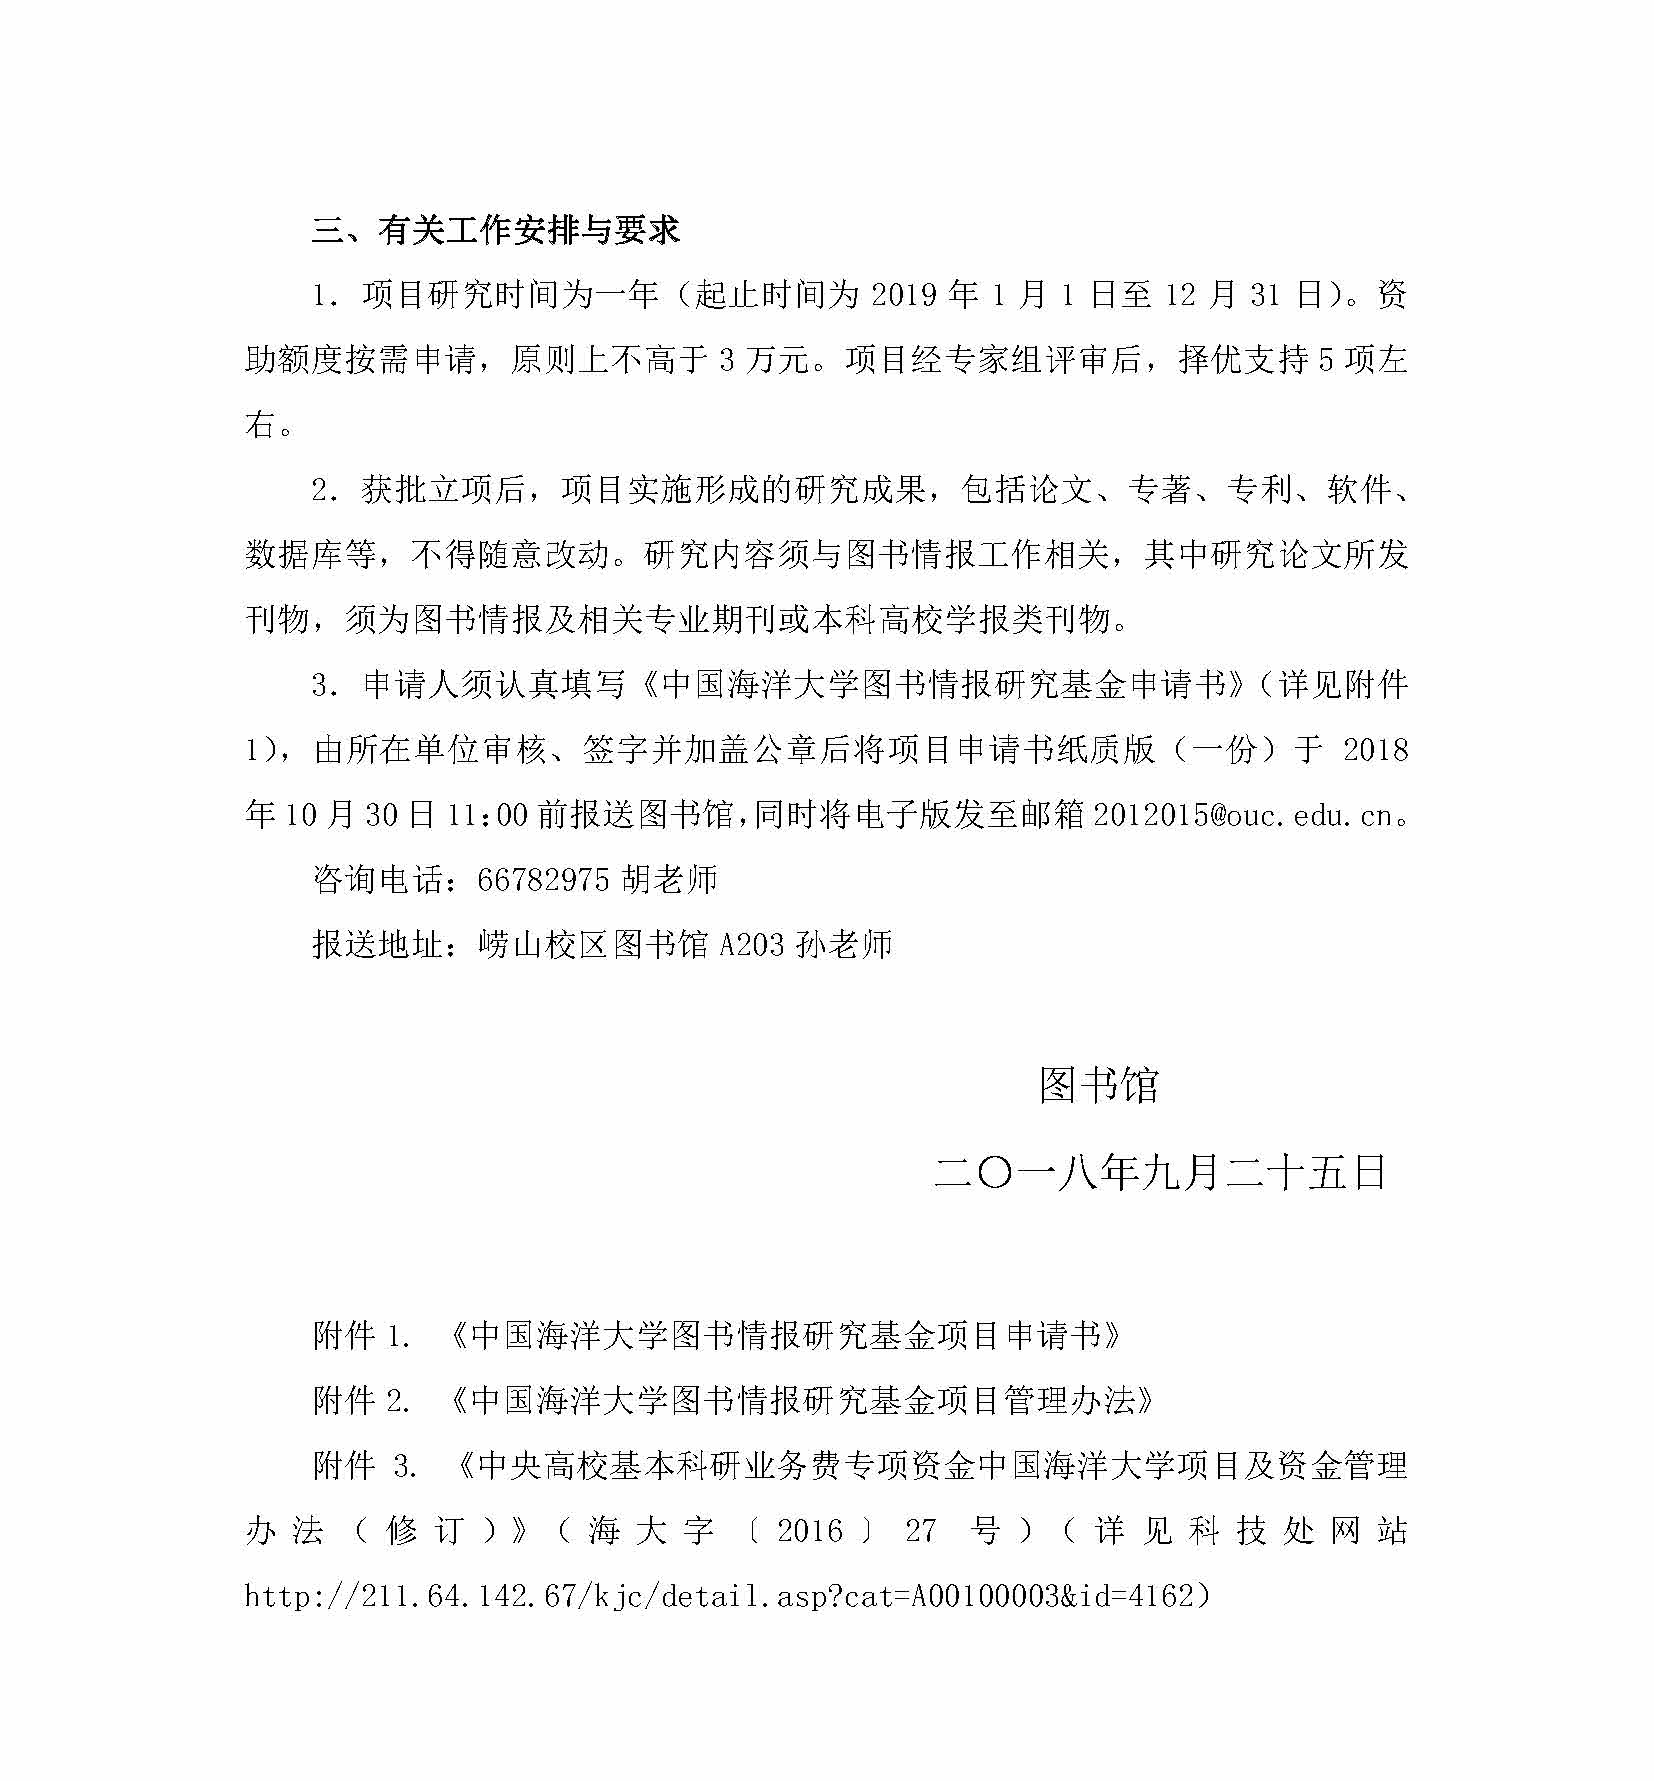 关于申报2019年度中国海洋大学图书情报研究基金项目的通知_页面_2.jpg